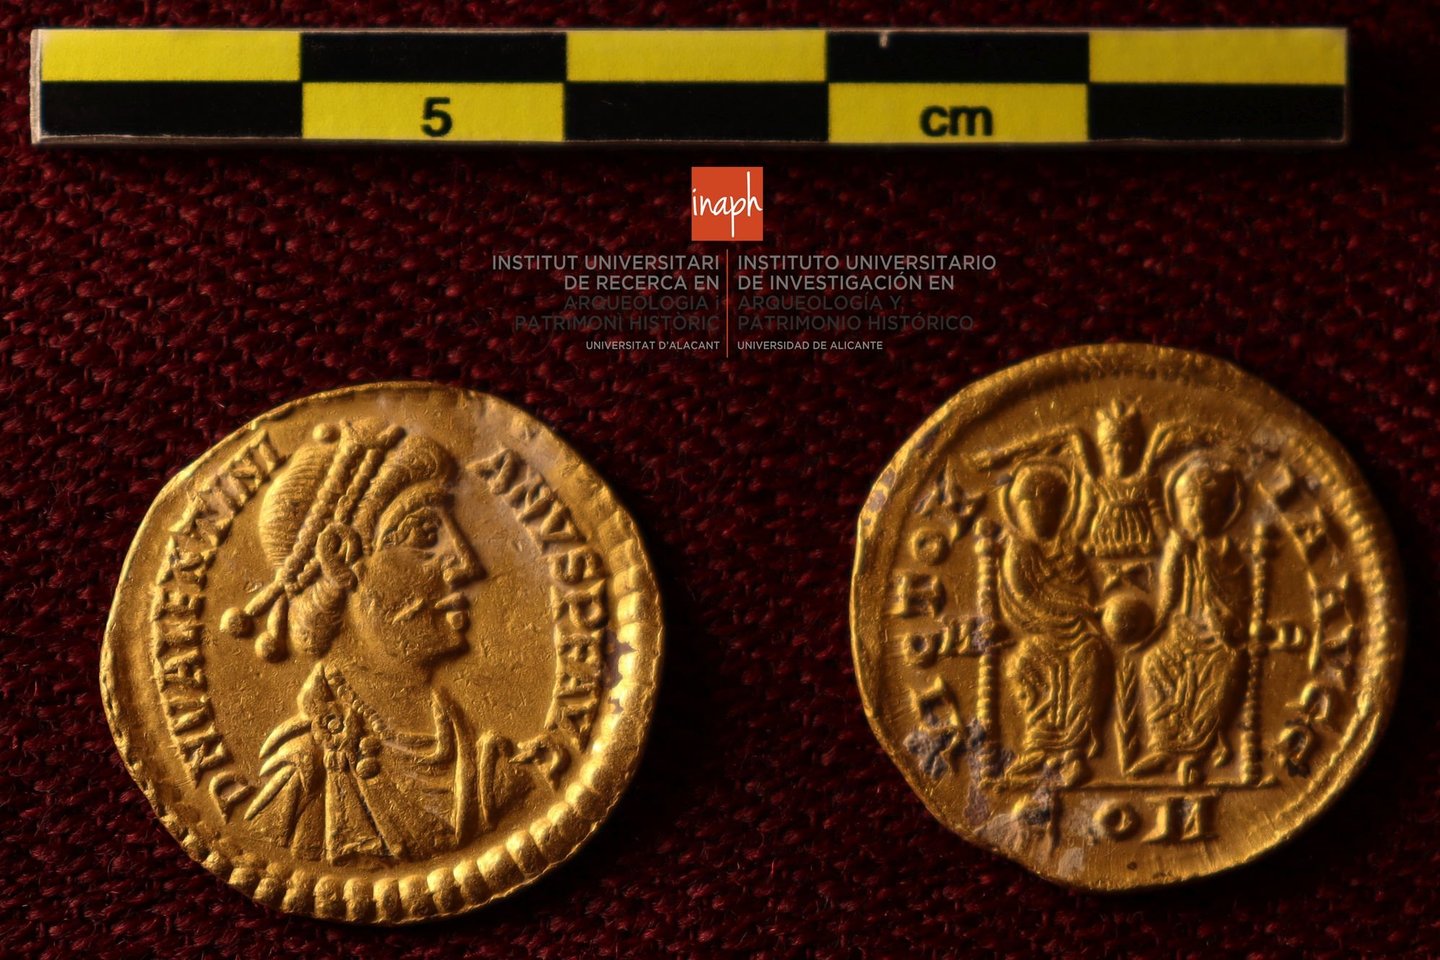 Du narai mėgėjai, plaukioję Ispanijos pakrantėje, aptiko didžiulį 1500 metų senumo auksinių monetų lobį – vieną didžiausių iš visų datuojamų Romos imperijos laikais.<br> Alikantės universiteto nuotr.